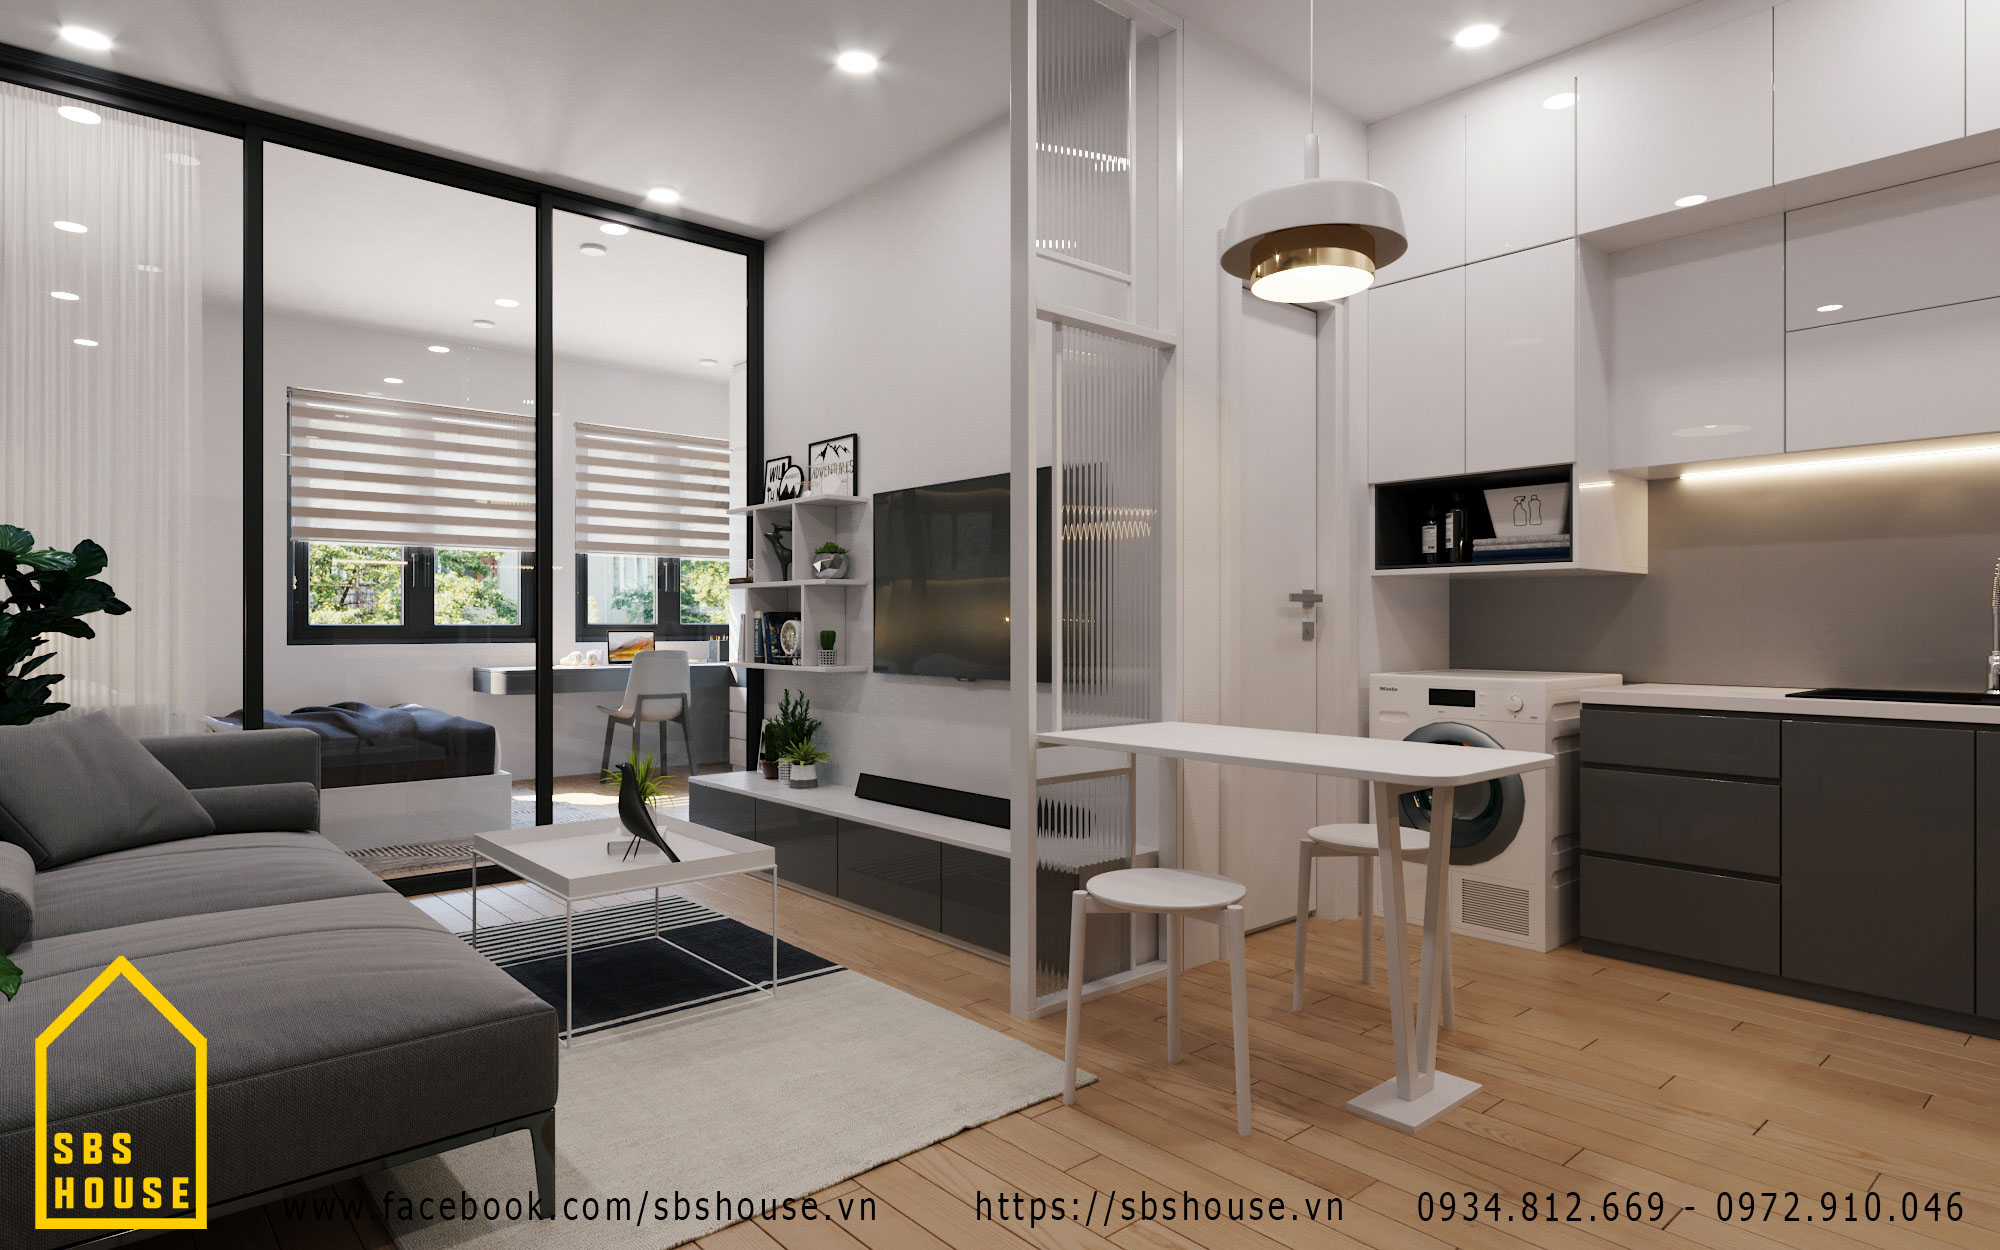 09 mẫu thiết kế nội thất chung cư nhỏ và tầm trung 60 70 80m2